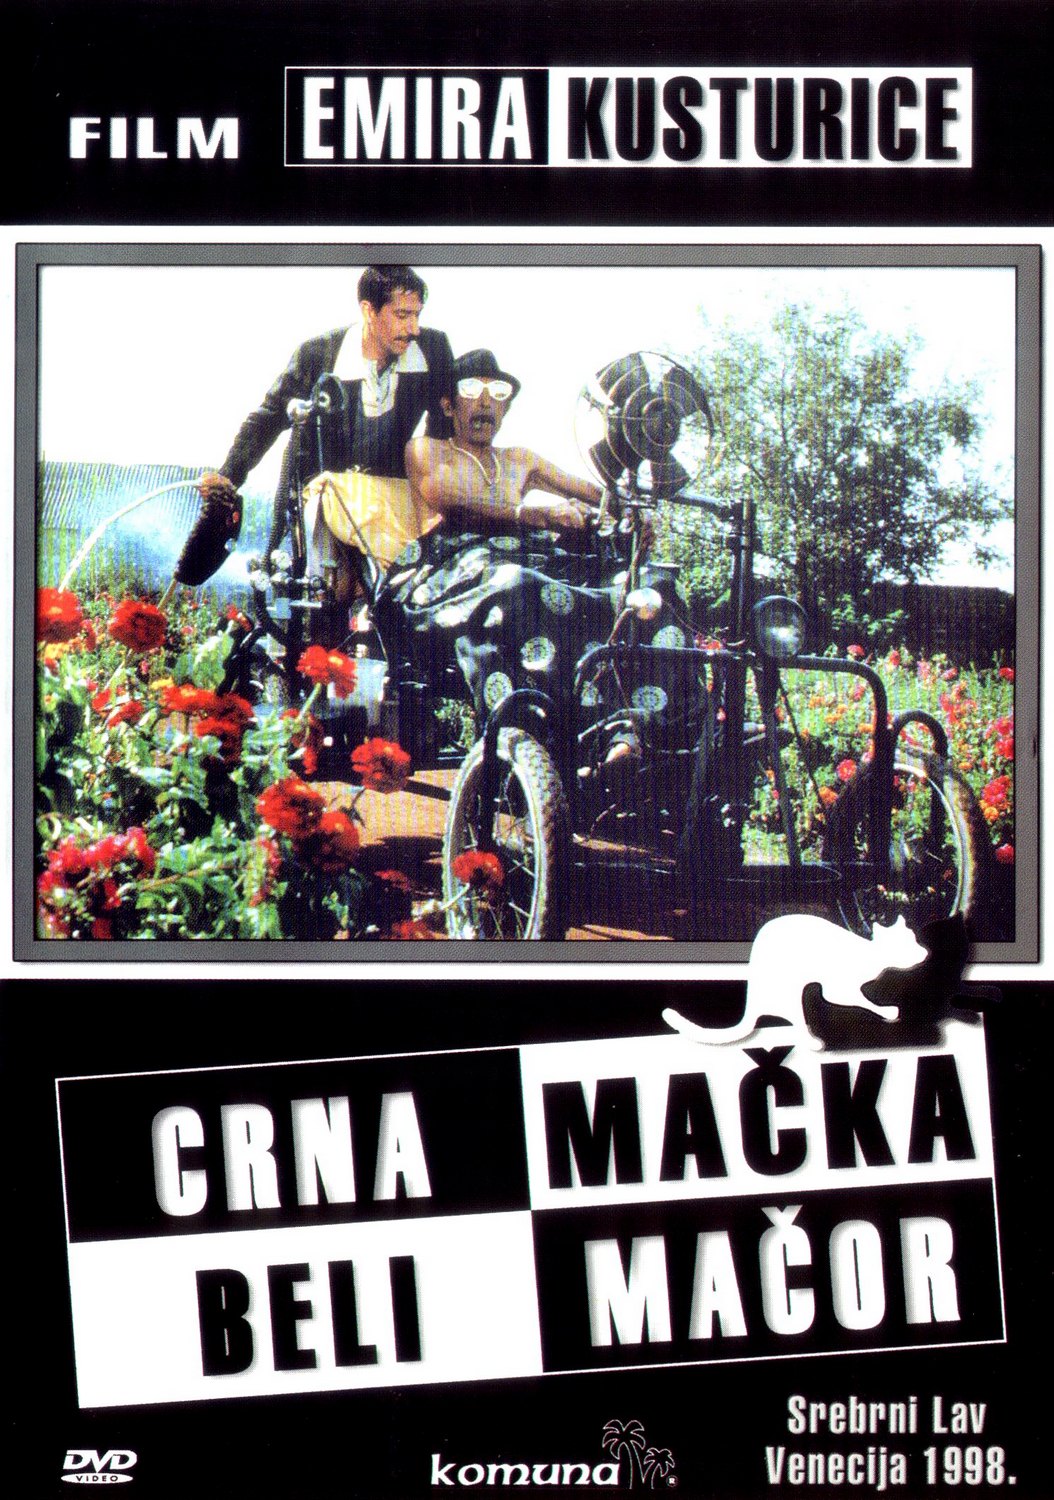 You are currently viewing Godišnjica kinopremijere filma Crna mačka, beli mačor Emira Kusturice